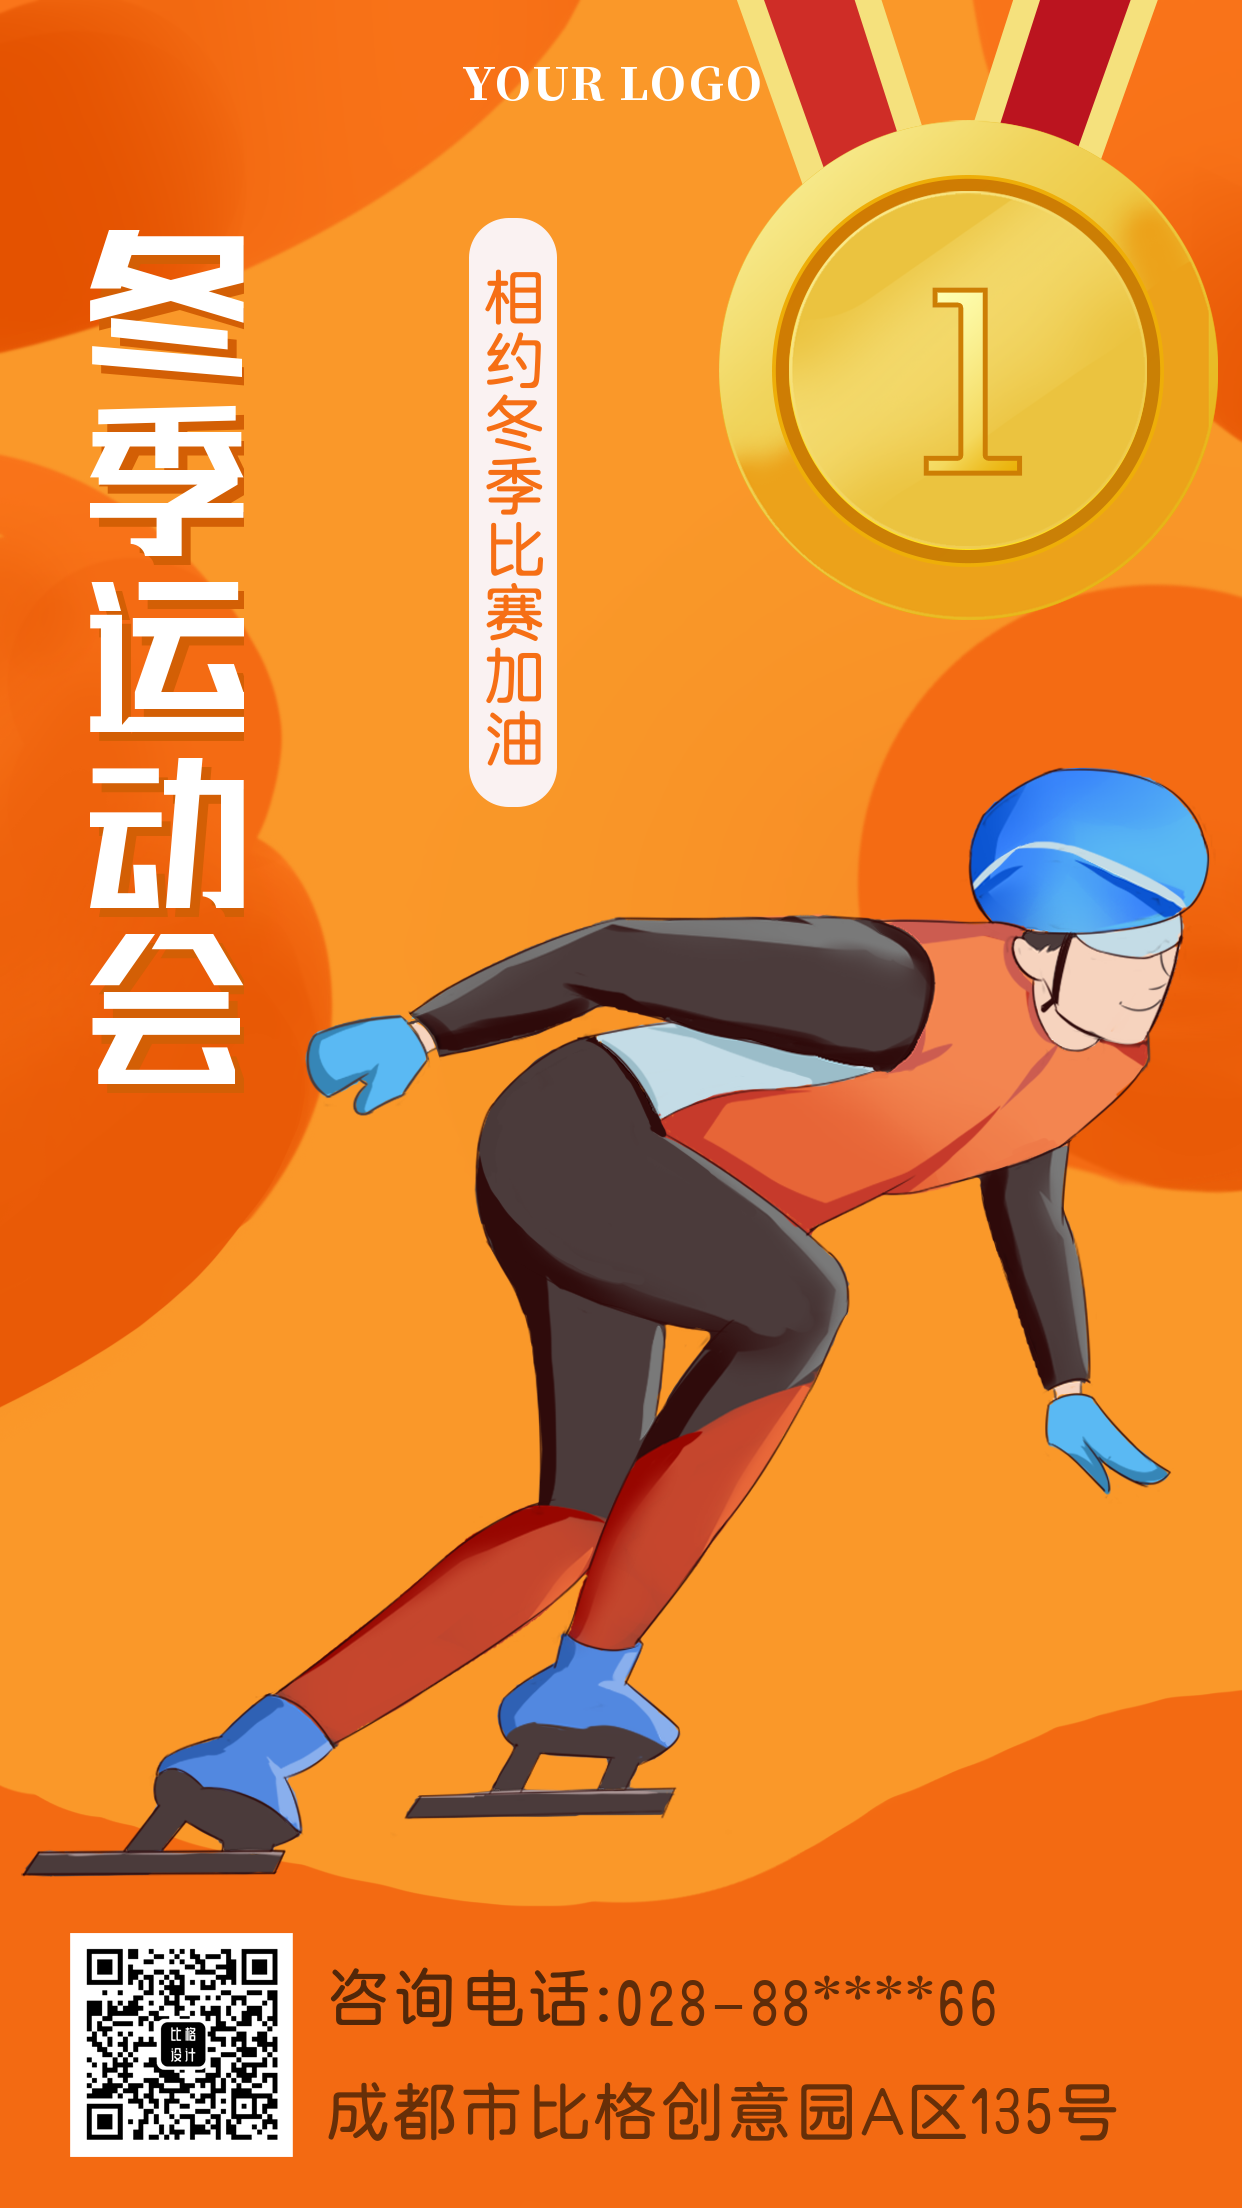 冬季运动会滑雪场景比赛人物手绘橙色手机海报